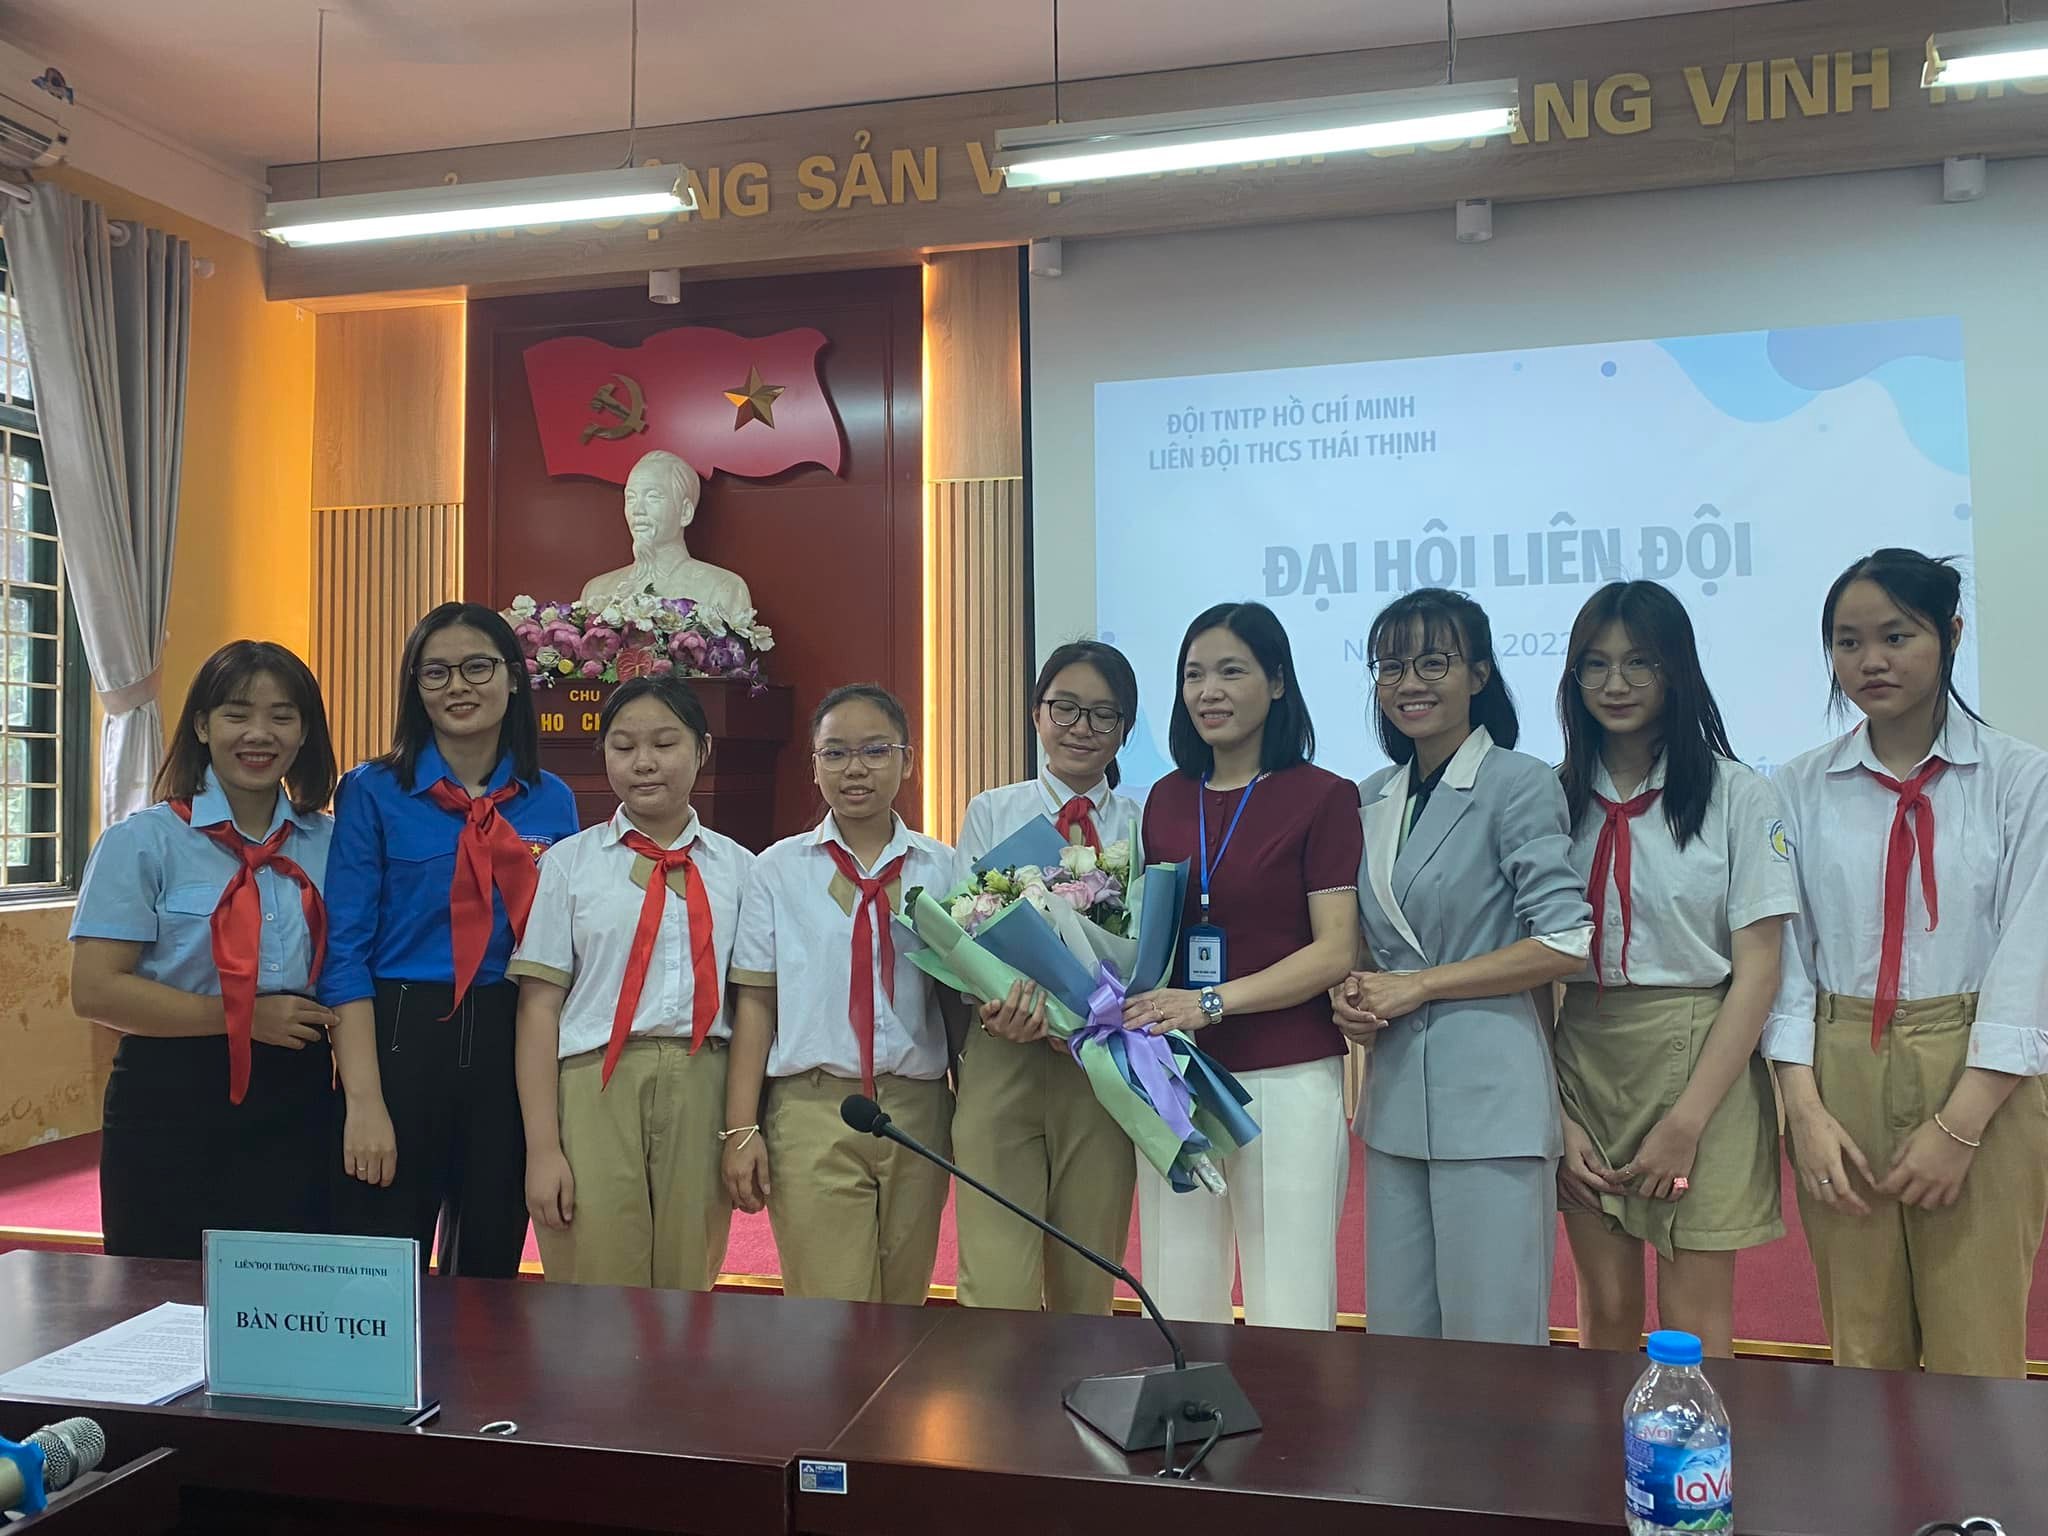 Đại hội Liên đội trường THCS Thái Thịnh năm học 2022-2023